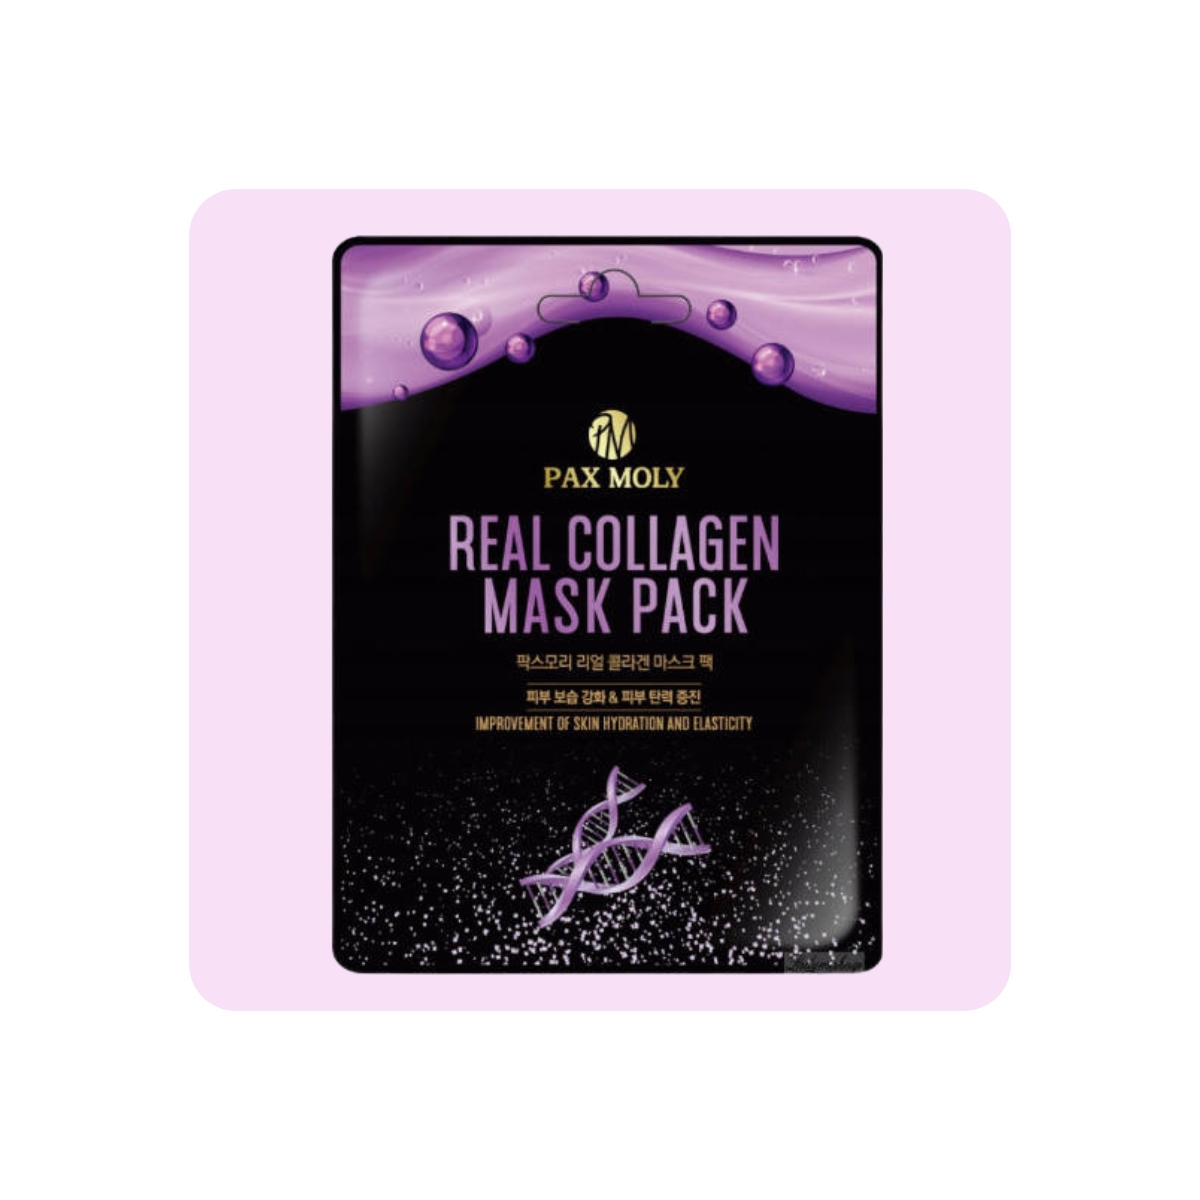 Mascarillas Coreanas de Hoja al mejor precio: PAX Molly Real Collagen Mask Pack - Firmeza e hidratación de PAX MOLY en Skin Thinks - 